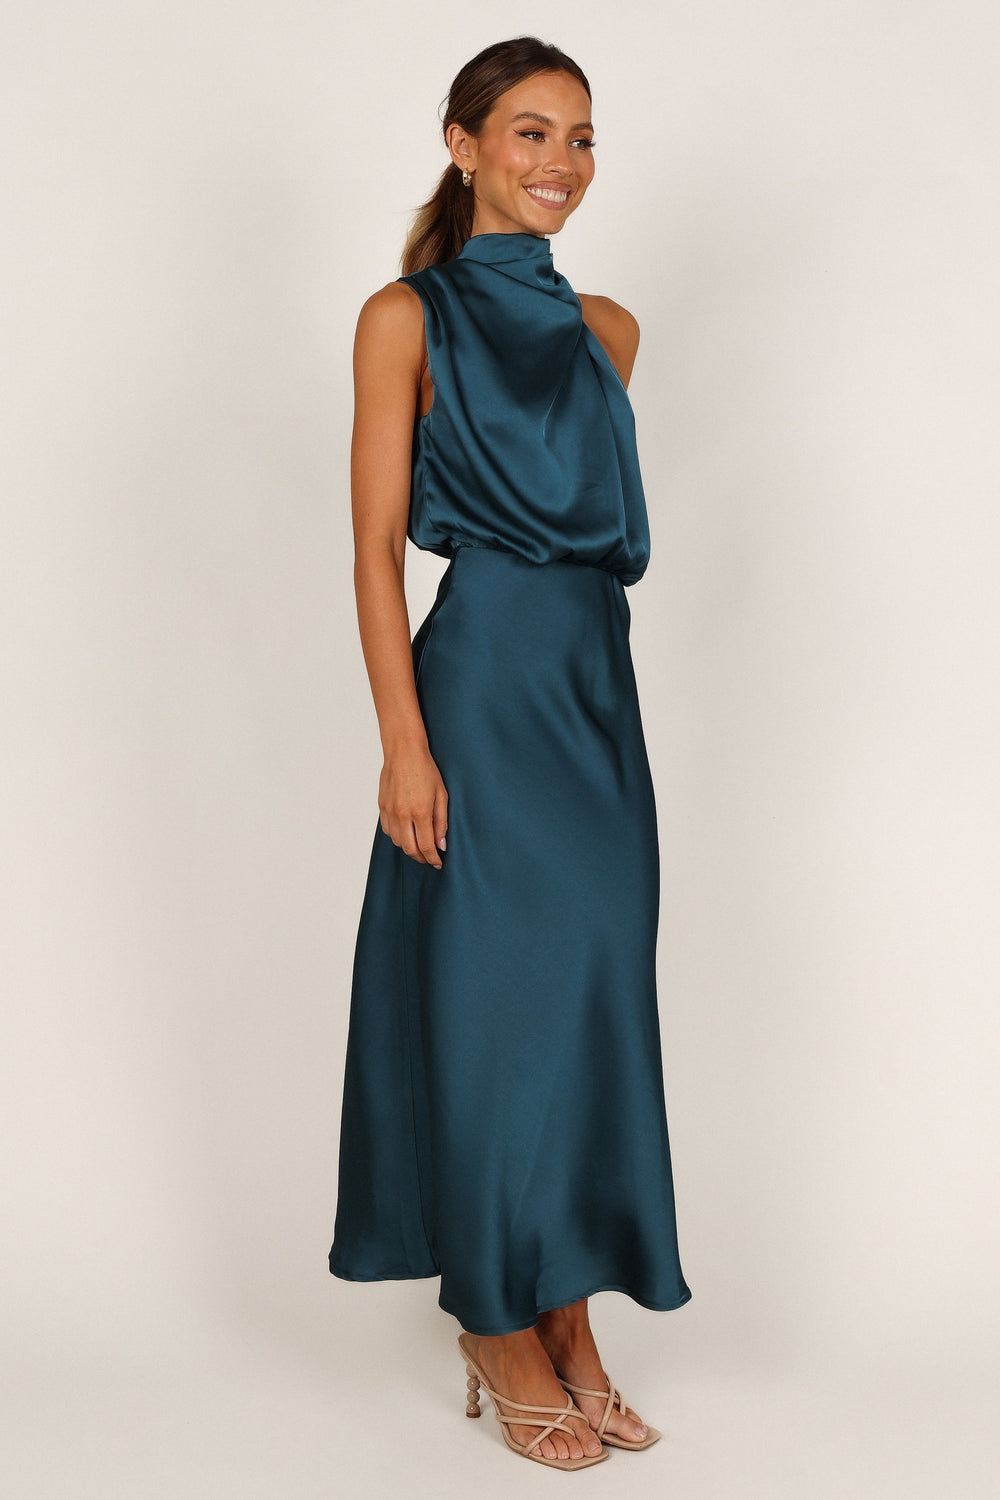 Shop Formal Dress - Anabelle Halter Neck Midi Dress - Teal fifth image